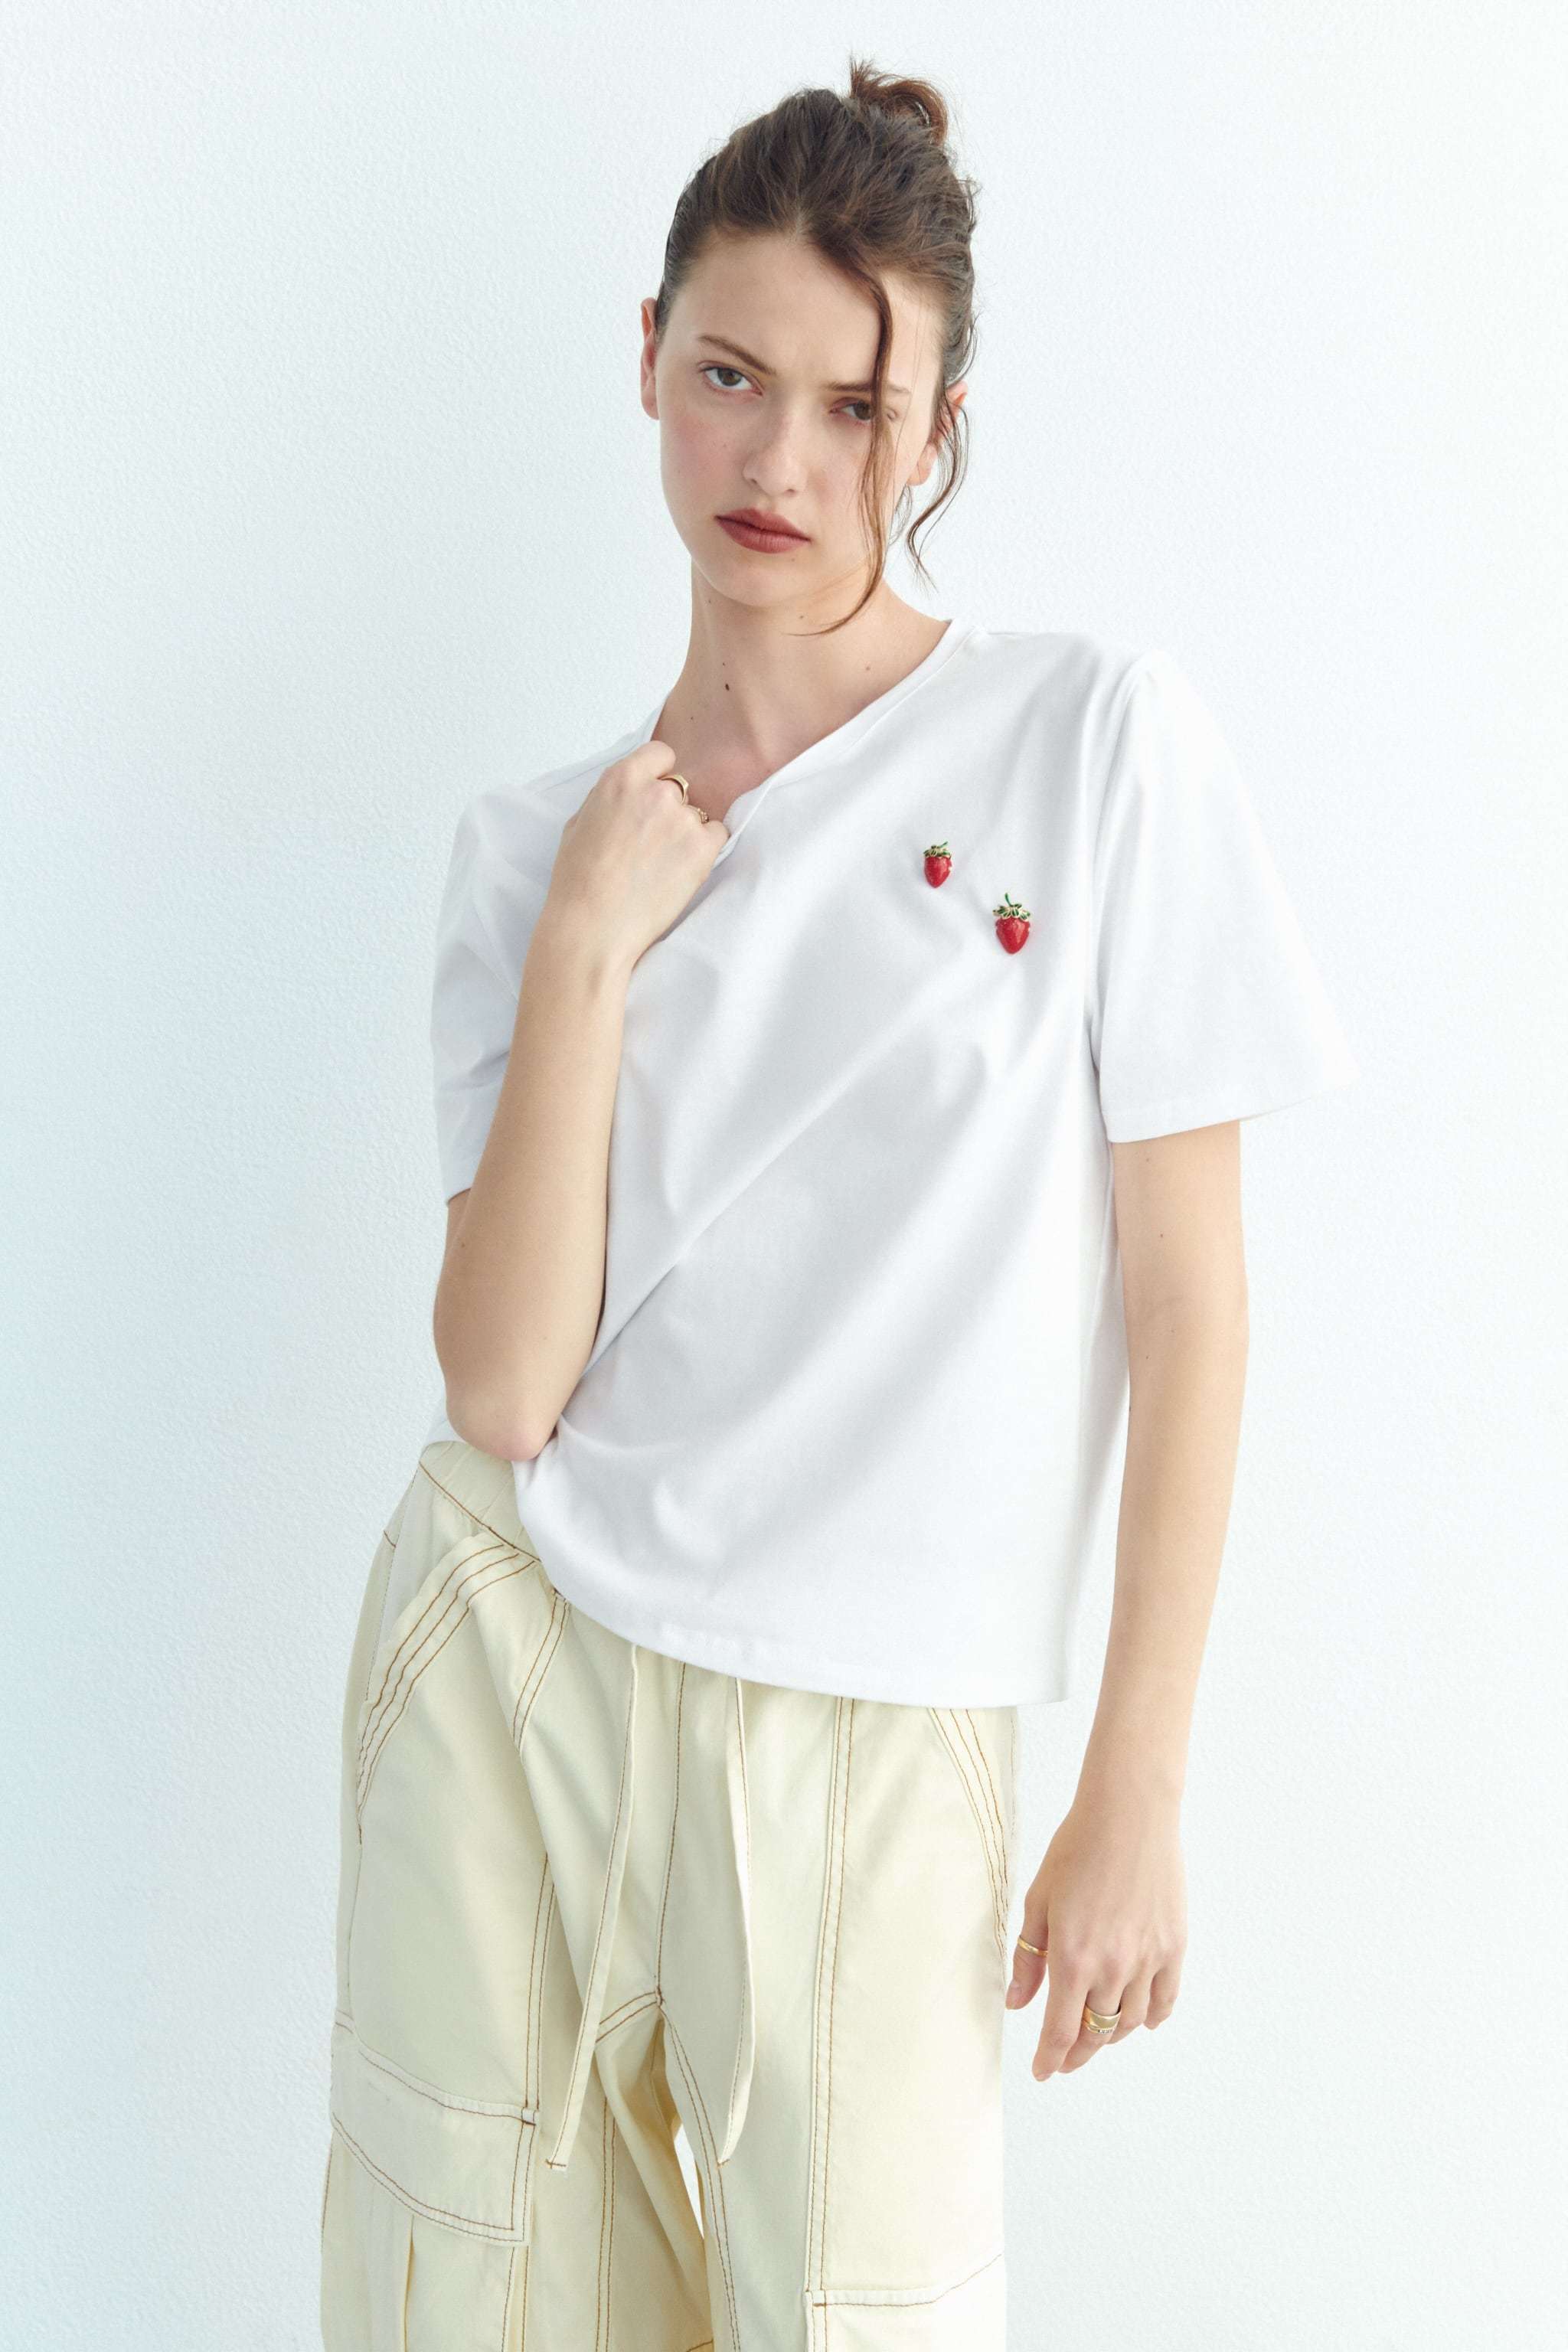 Camiseta blanca con joyas fresas, de Zara (9,99 euros).